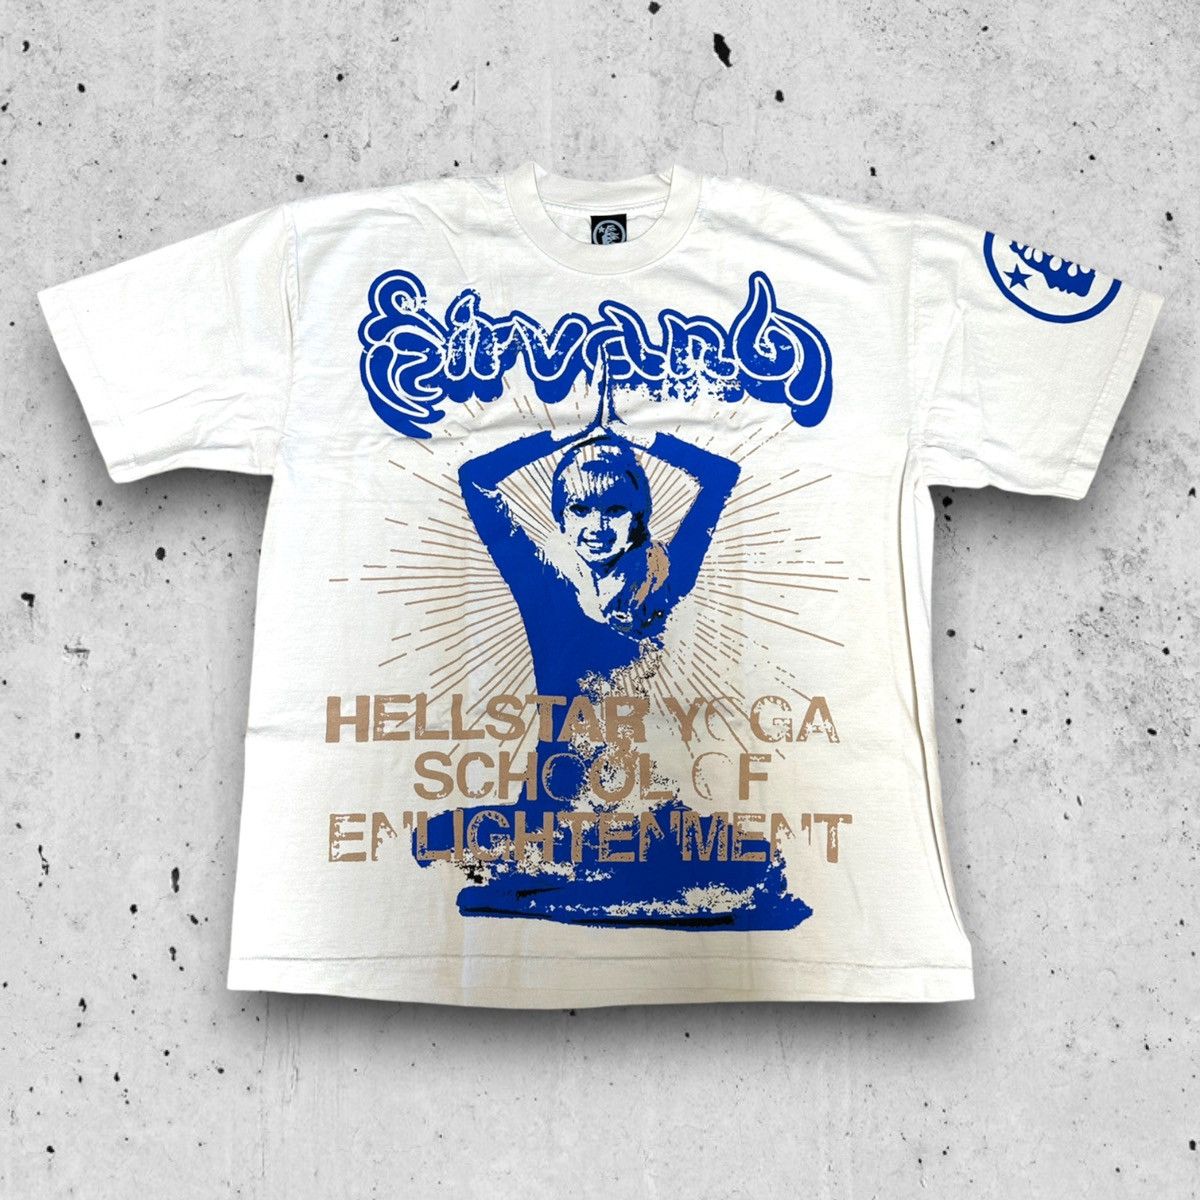 Hellstar Yoga T-Shirt - HELLSTAR